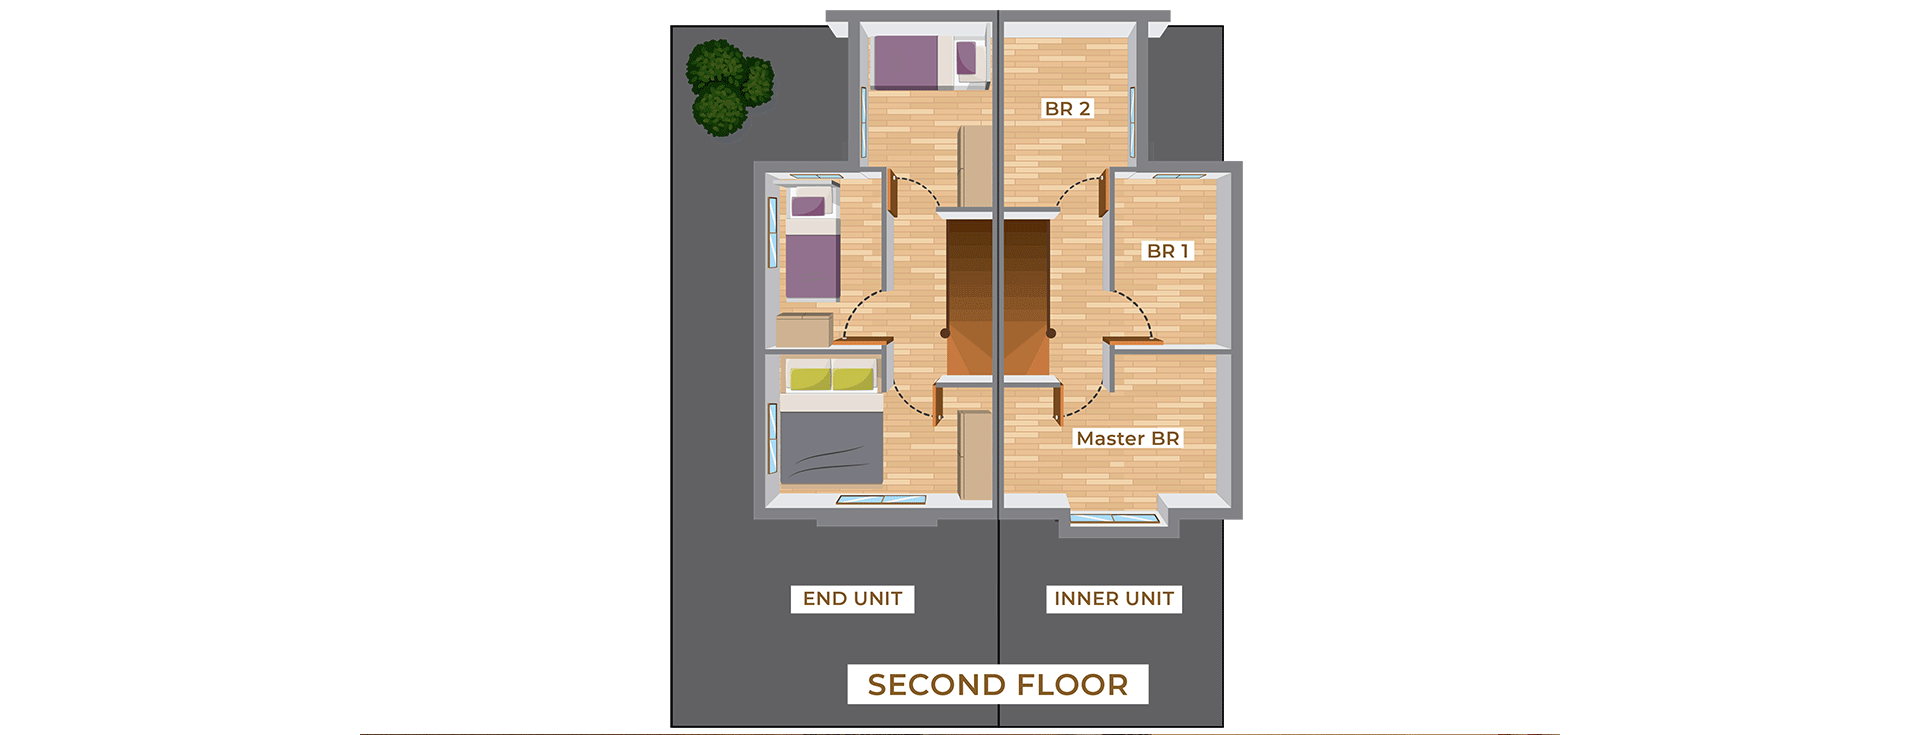 SHPY_Aliyah Second Floor Plan